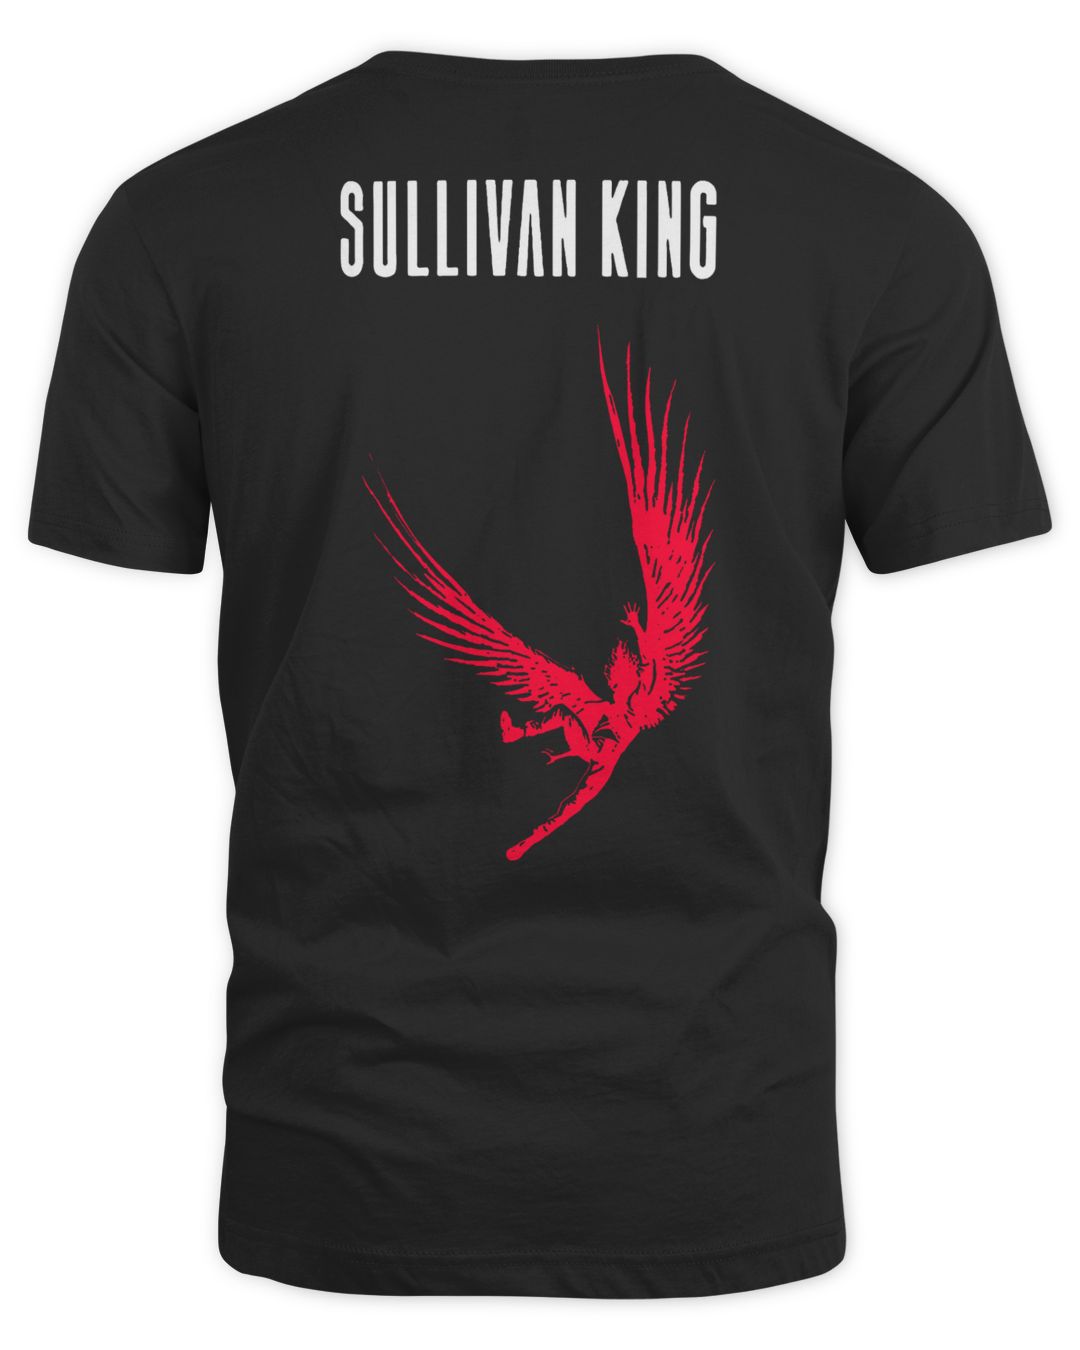 Sullivan King Merch Loud & Reckless Shirt